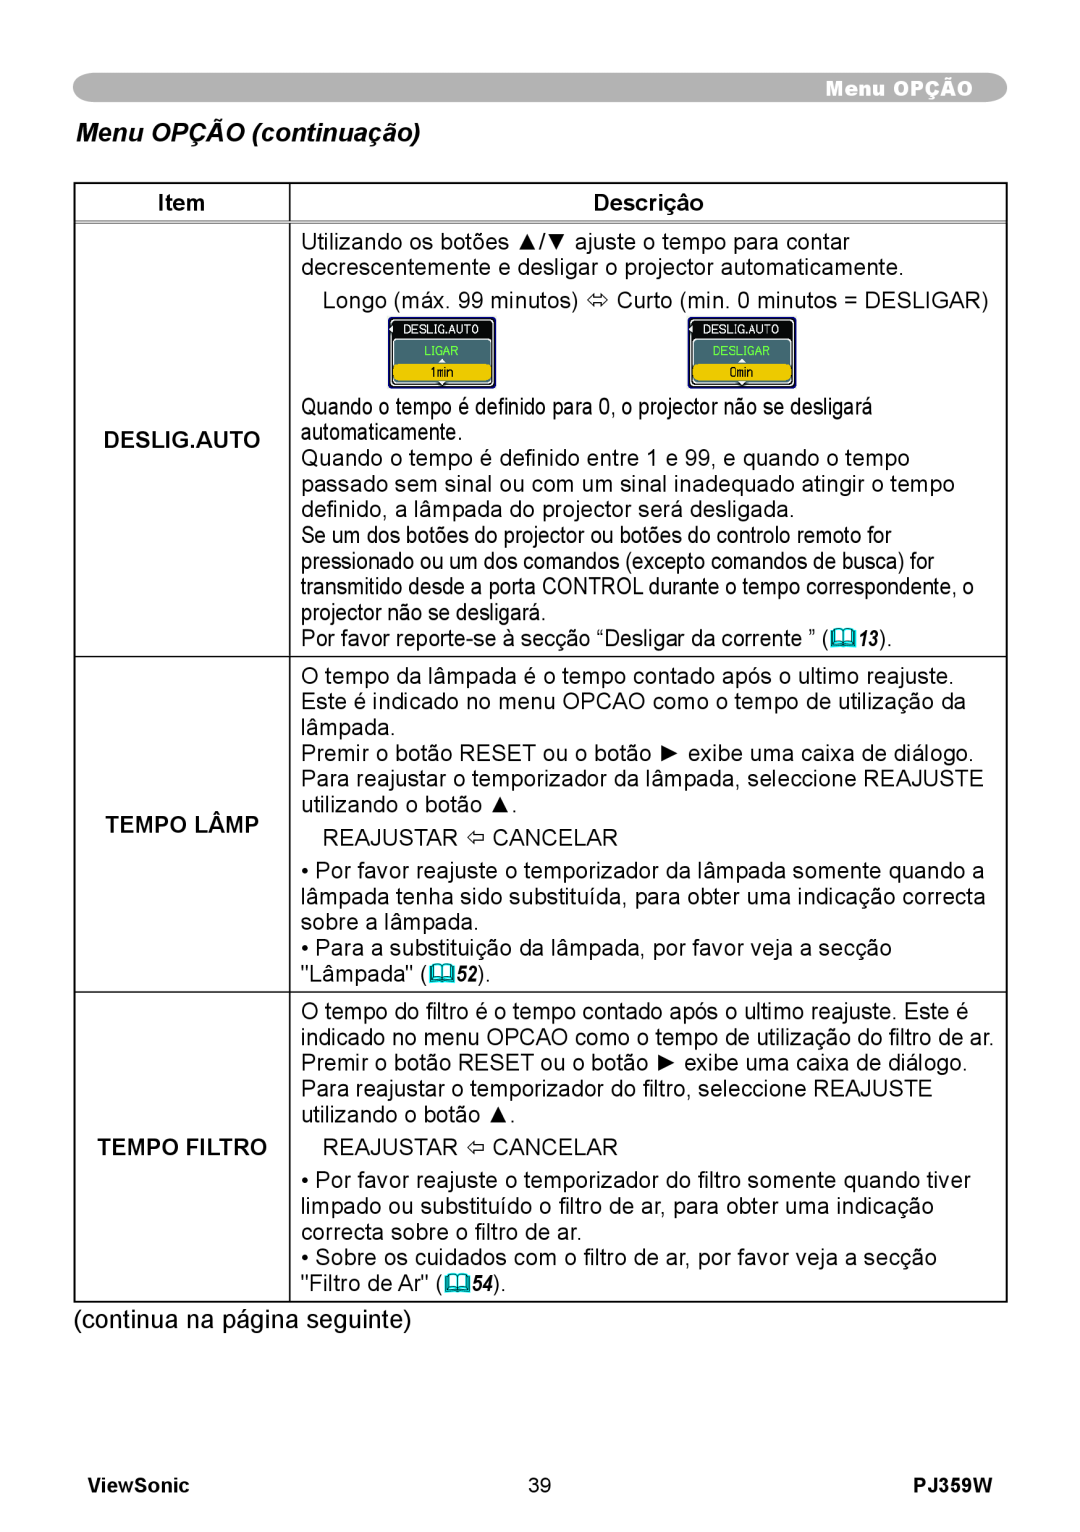 ViewSonic PJ359 manual Menu OPÇÃO continuação, Descriçâo, Deslig.Auto, Tempo Lâmp, Tempo Filtro 